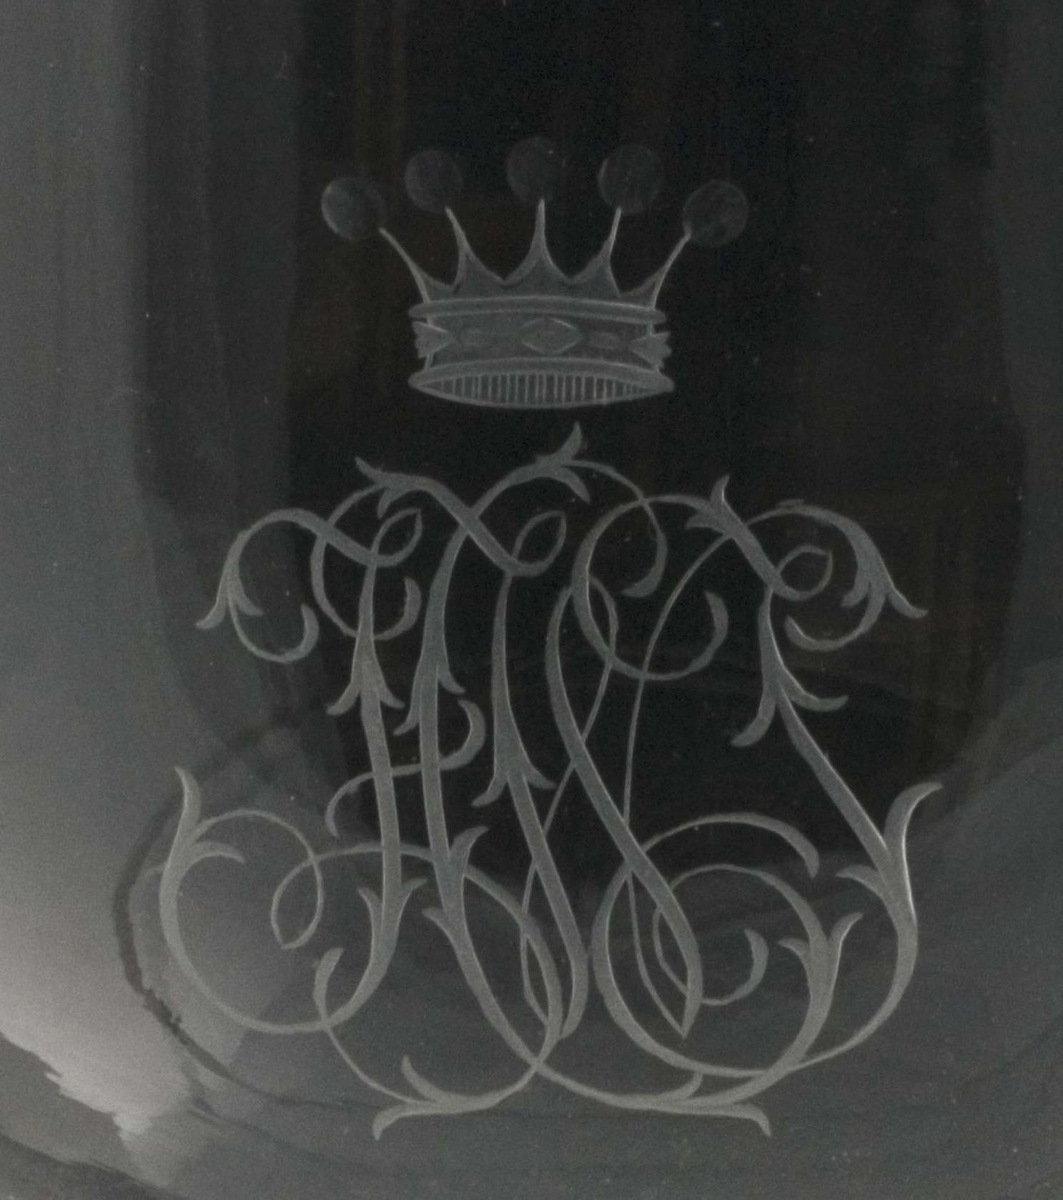 Pokal; glass, kompakt fot og stett, cupa bolleformet med hvit kant øverst. Gravert monogram med krone.